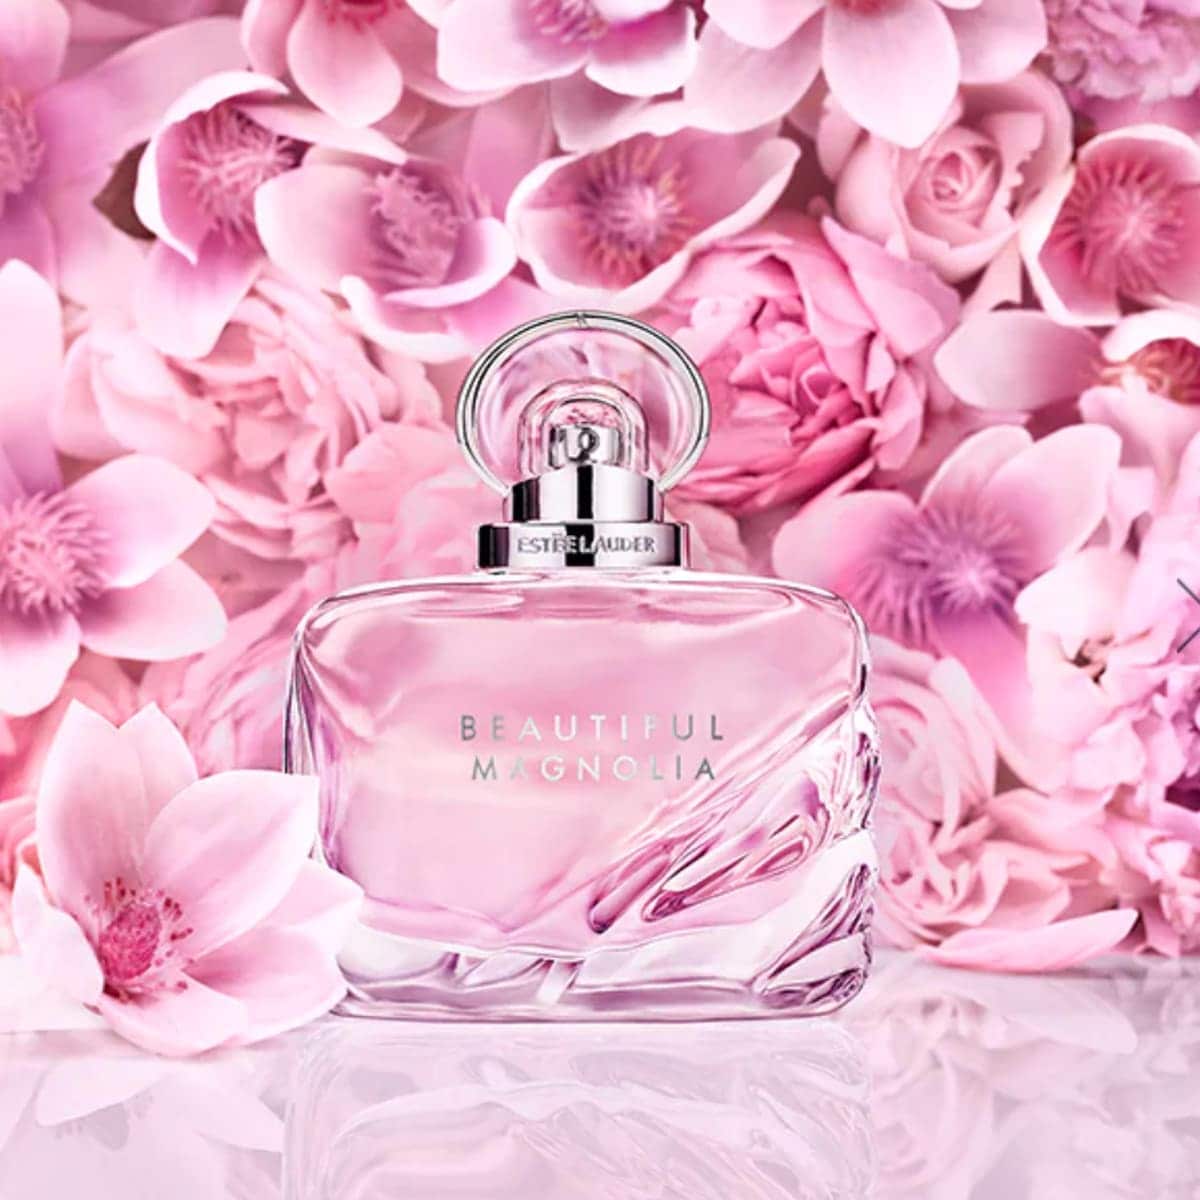 Beautiful Magnolia Eau de Parfum Spray by Estee Lauder